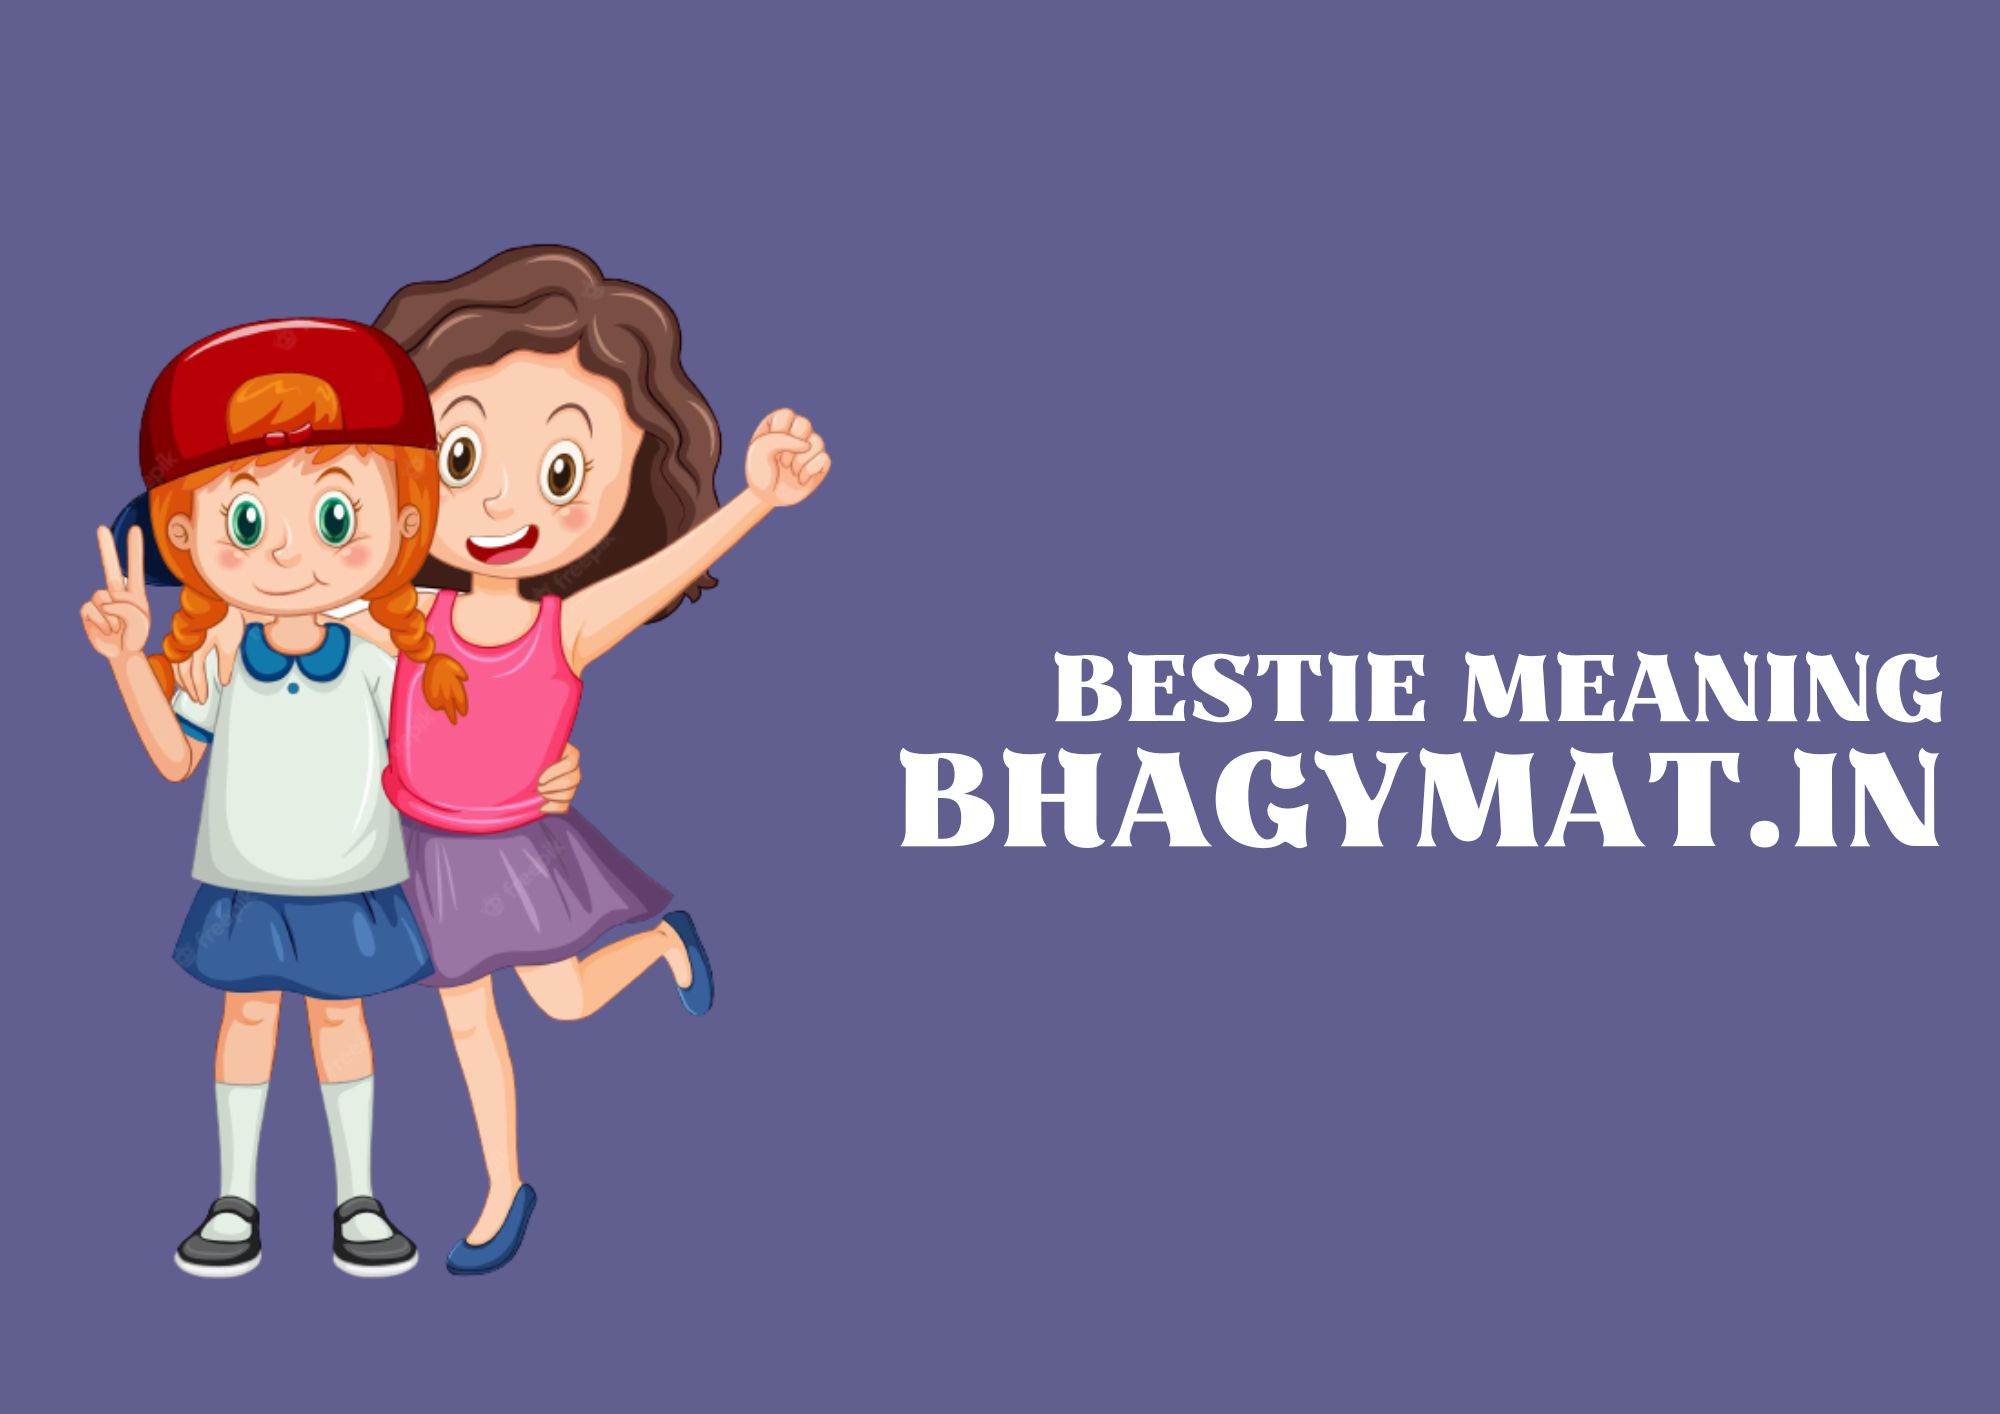 बेस्टी का मतलब क्या होता है (Bestie Ka Matlab Kya Hota Hai) - Meaning Of Bestie In Hindi - My Bestie Meaning in Hindi